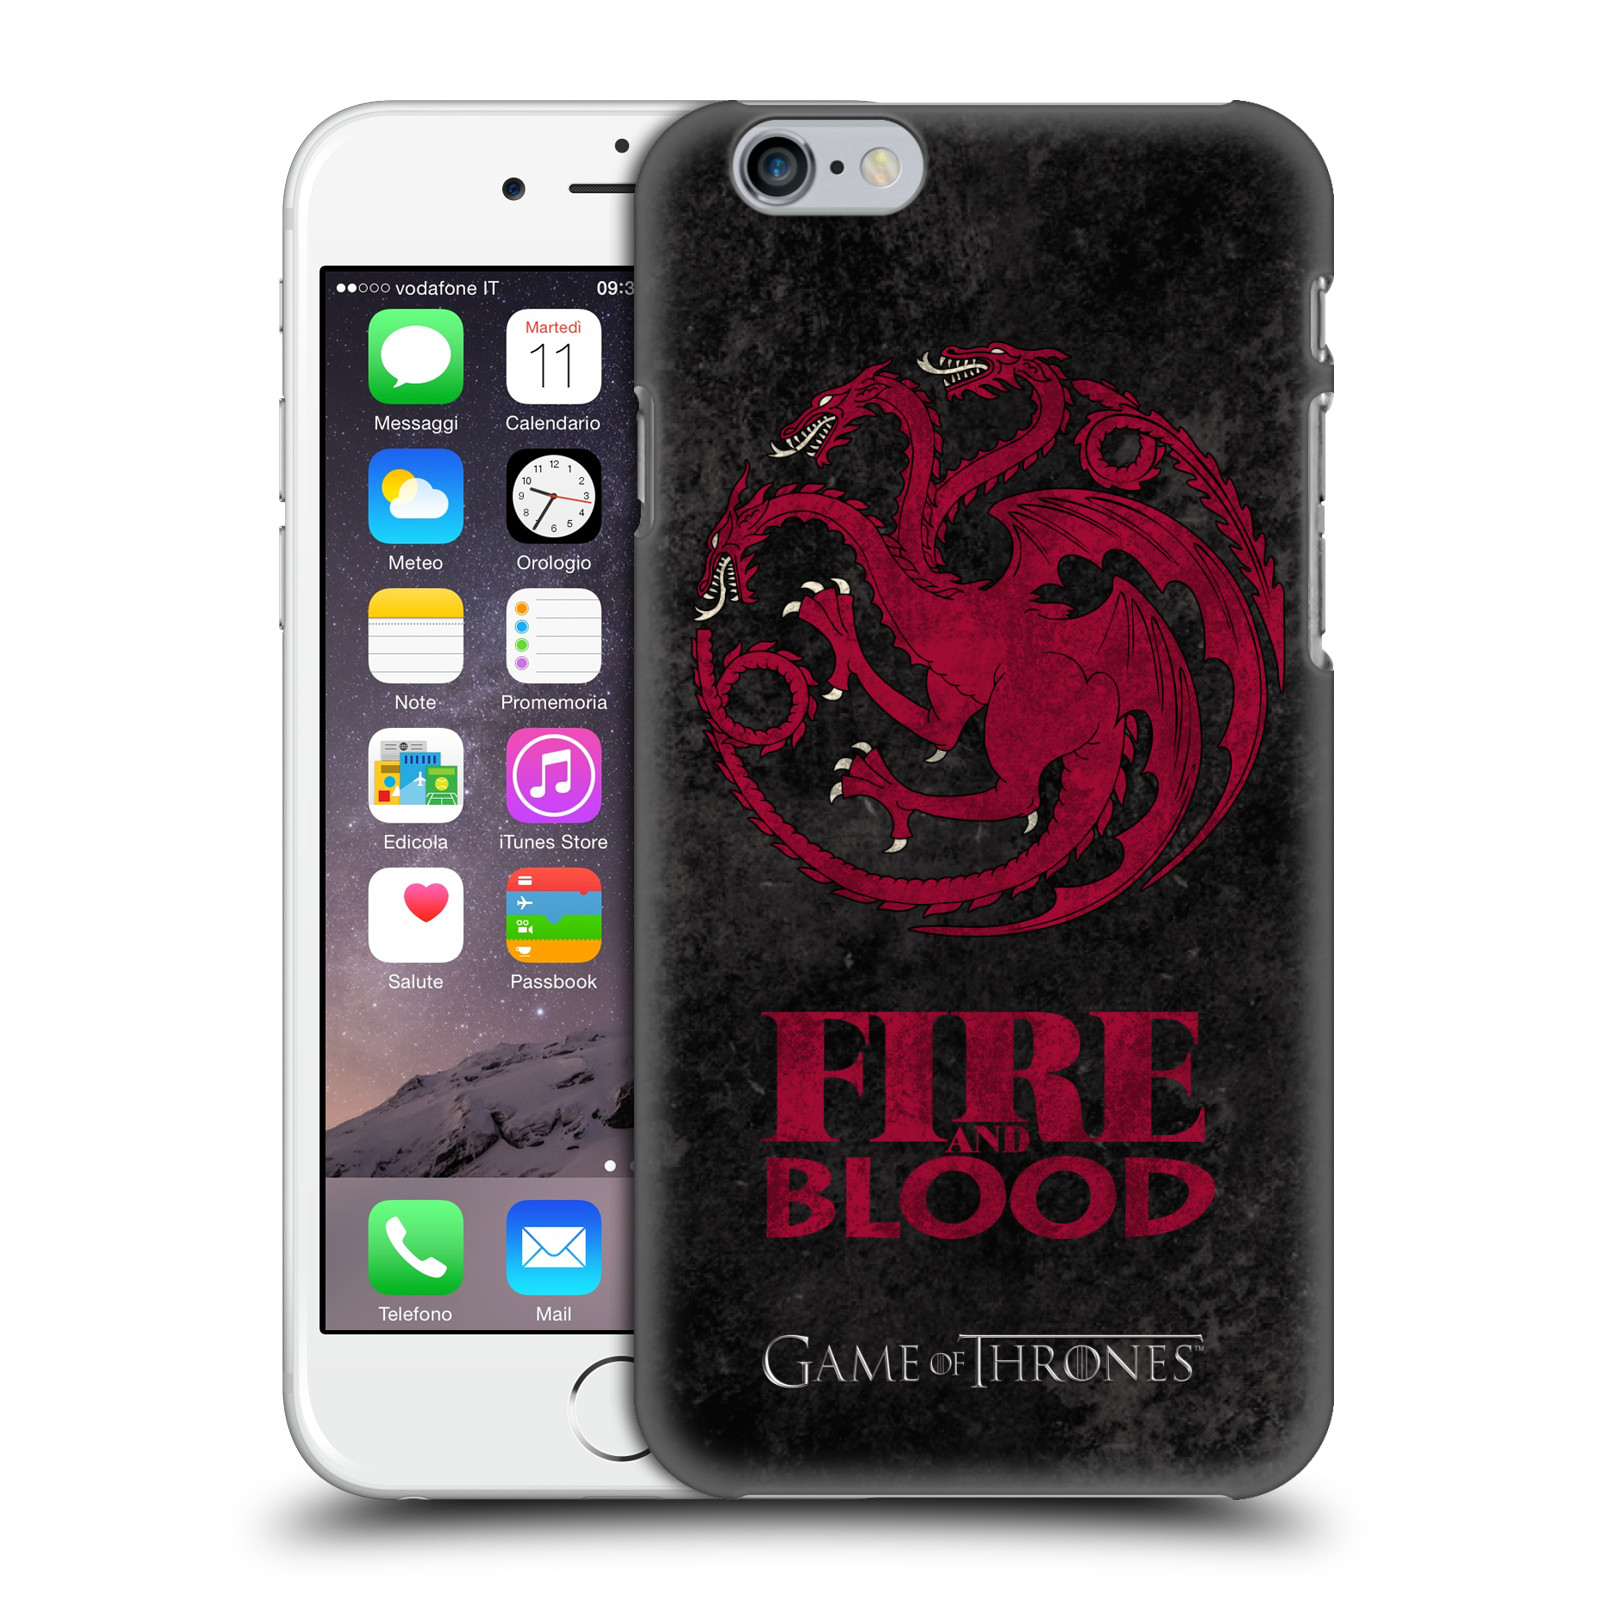 Plastové pouzdro na mobil Apple iPhone 6 HEAD CASE Hra o trůny - Sigils Targaryen - Fire and Blood (Plastový kryt či obal na mobilní telefon s licencovaným motivem Hra o trůny - Game Of Thrones pro Apple iPhone 6)